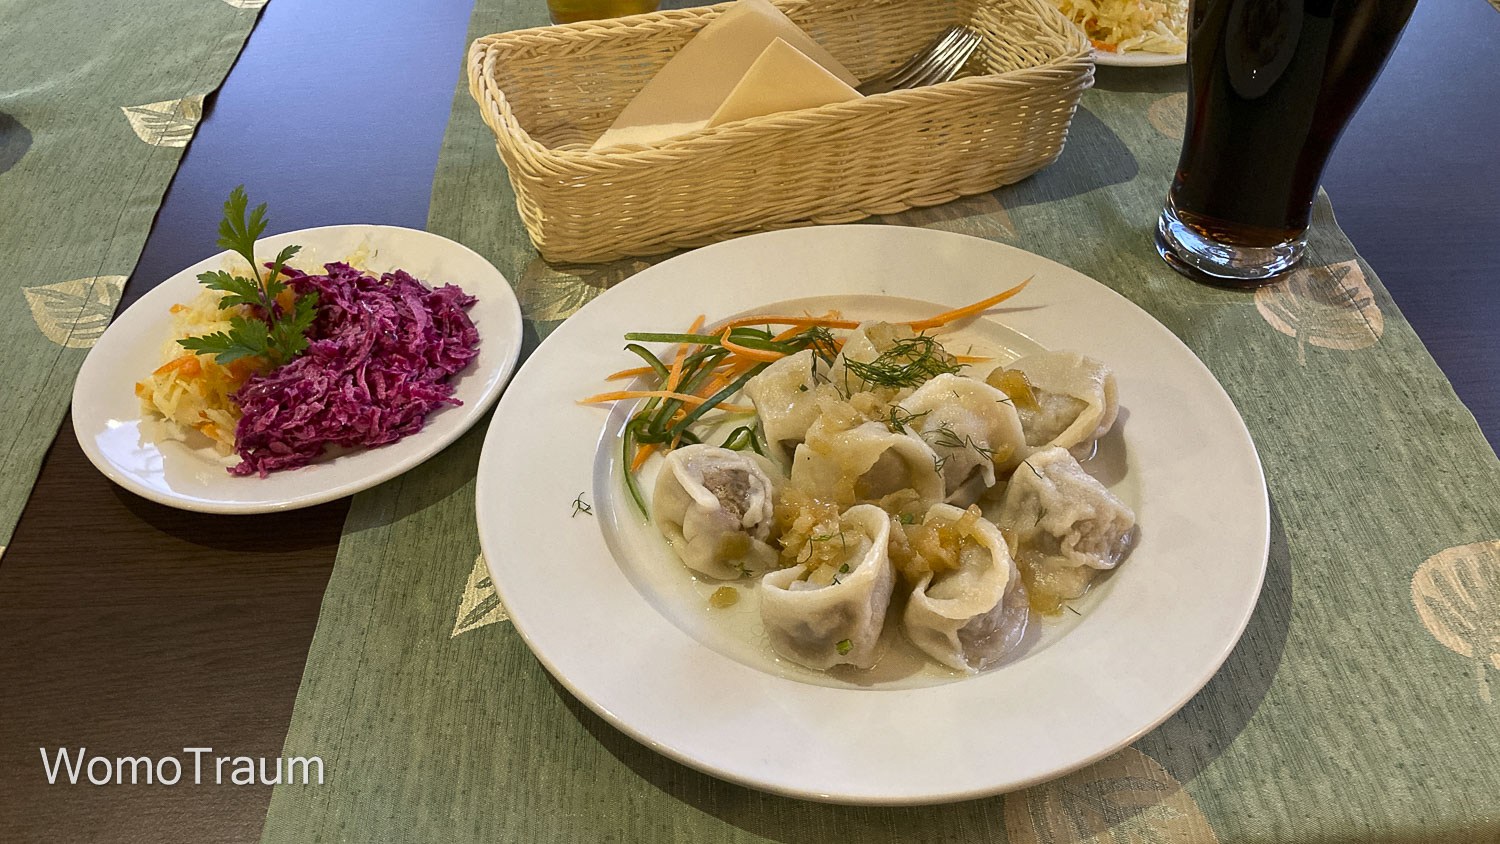 Polnische Küche aus Ermland-Masuren. Leckere Dzyndzalki